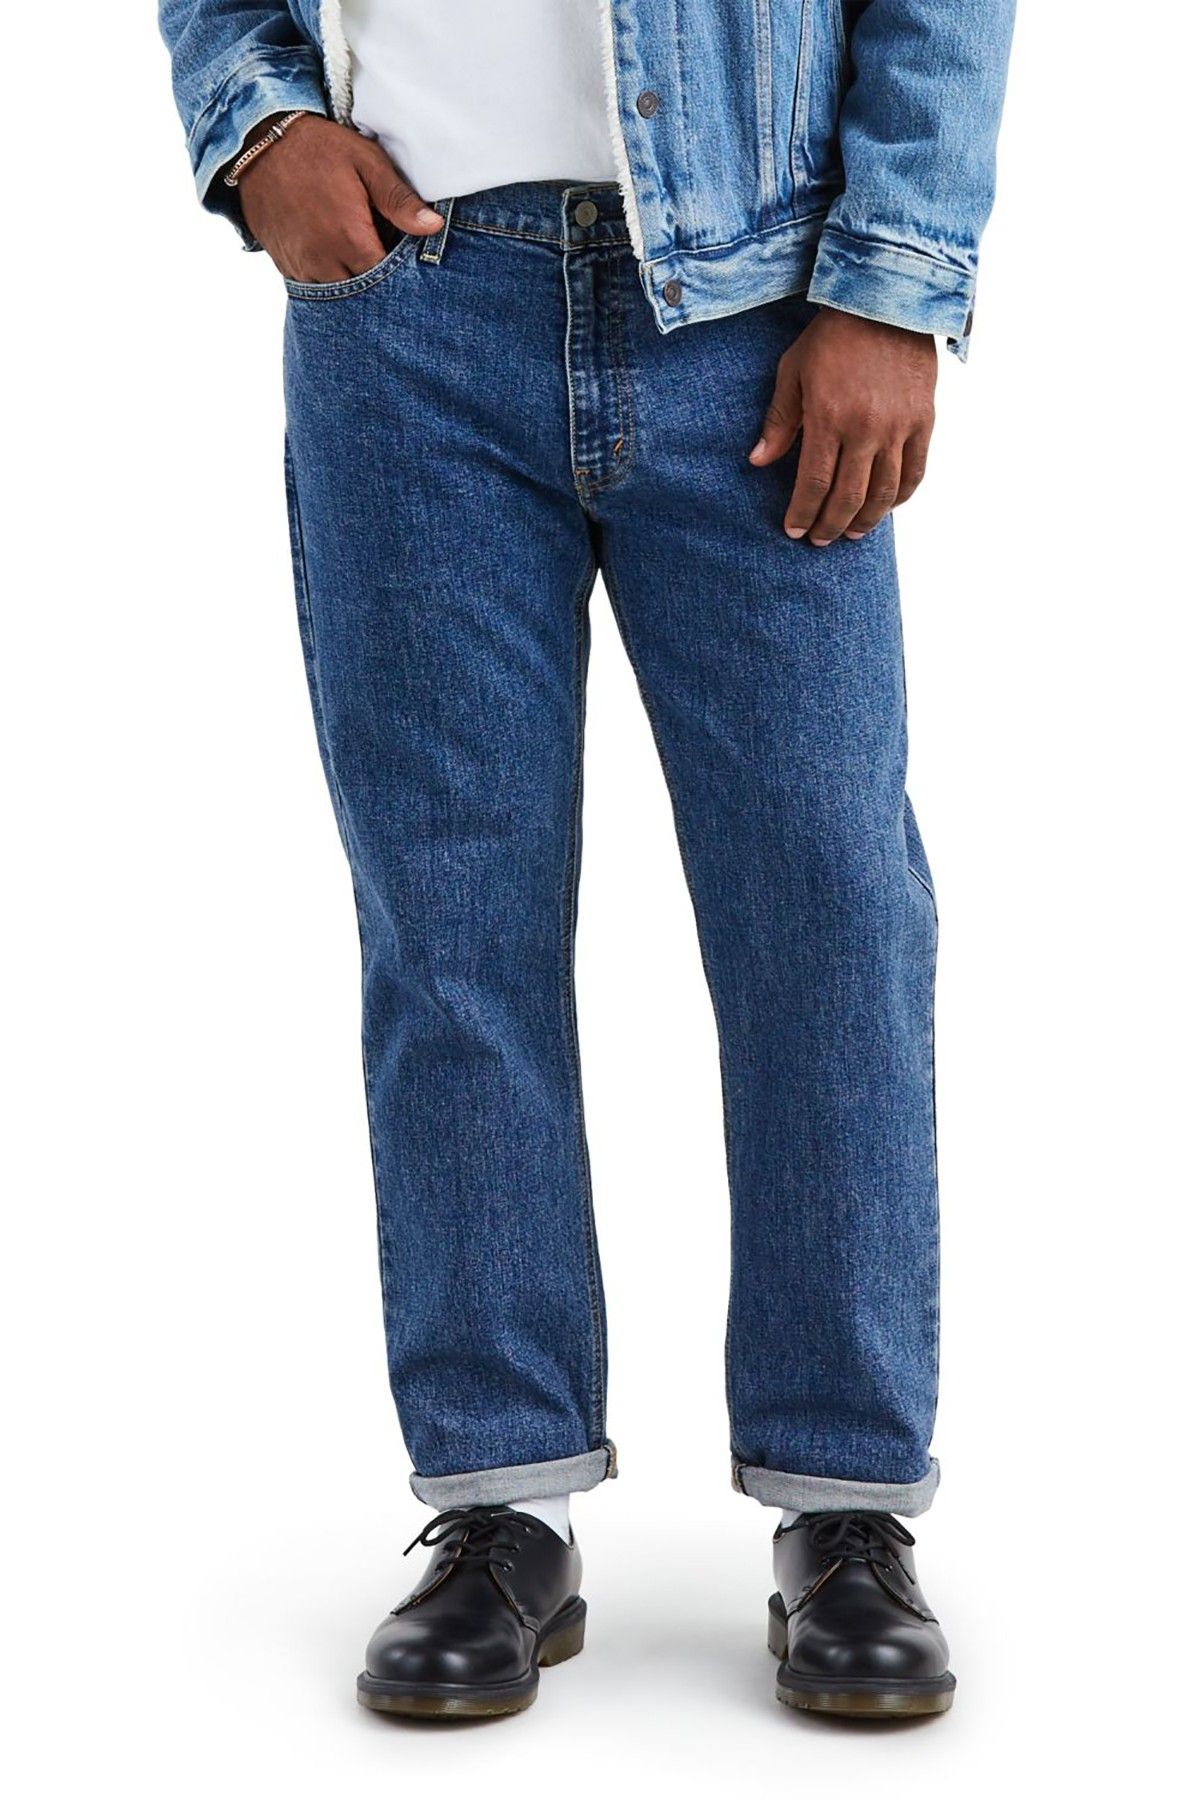 Levi's Â® 541 Athletic Taper Fit Jeans Men Jeans|